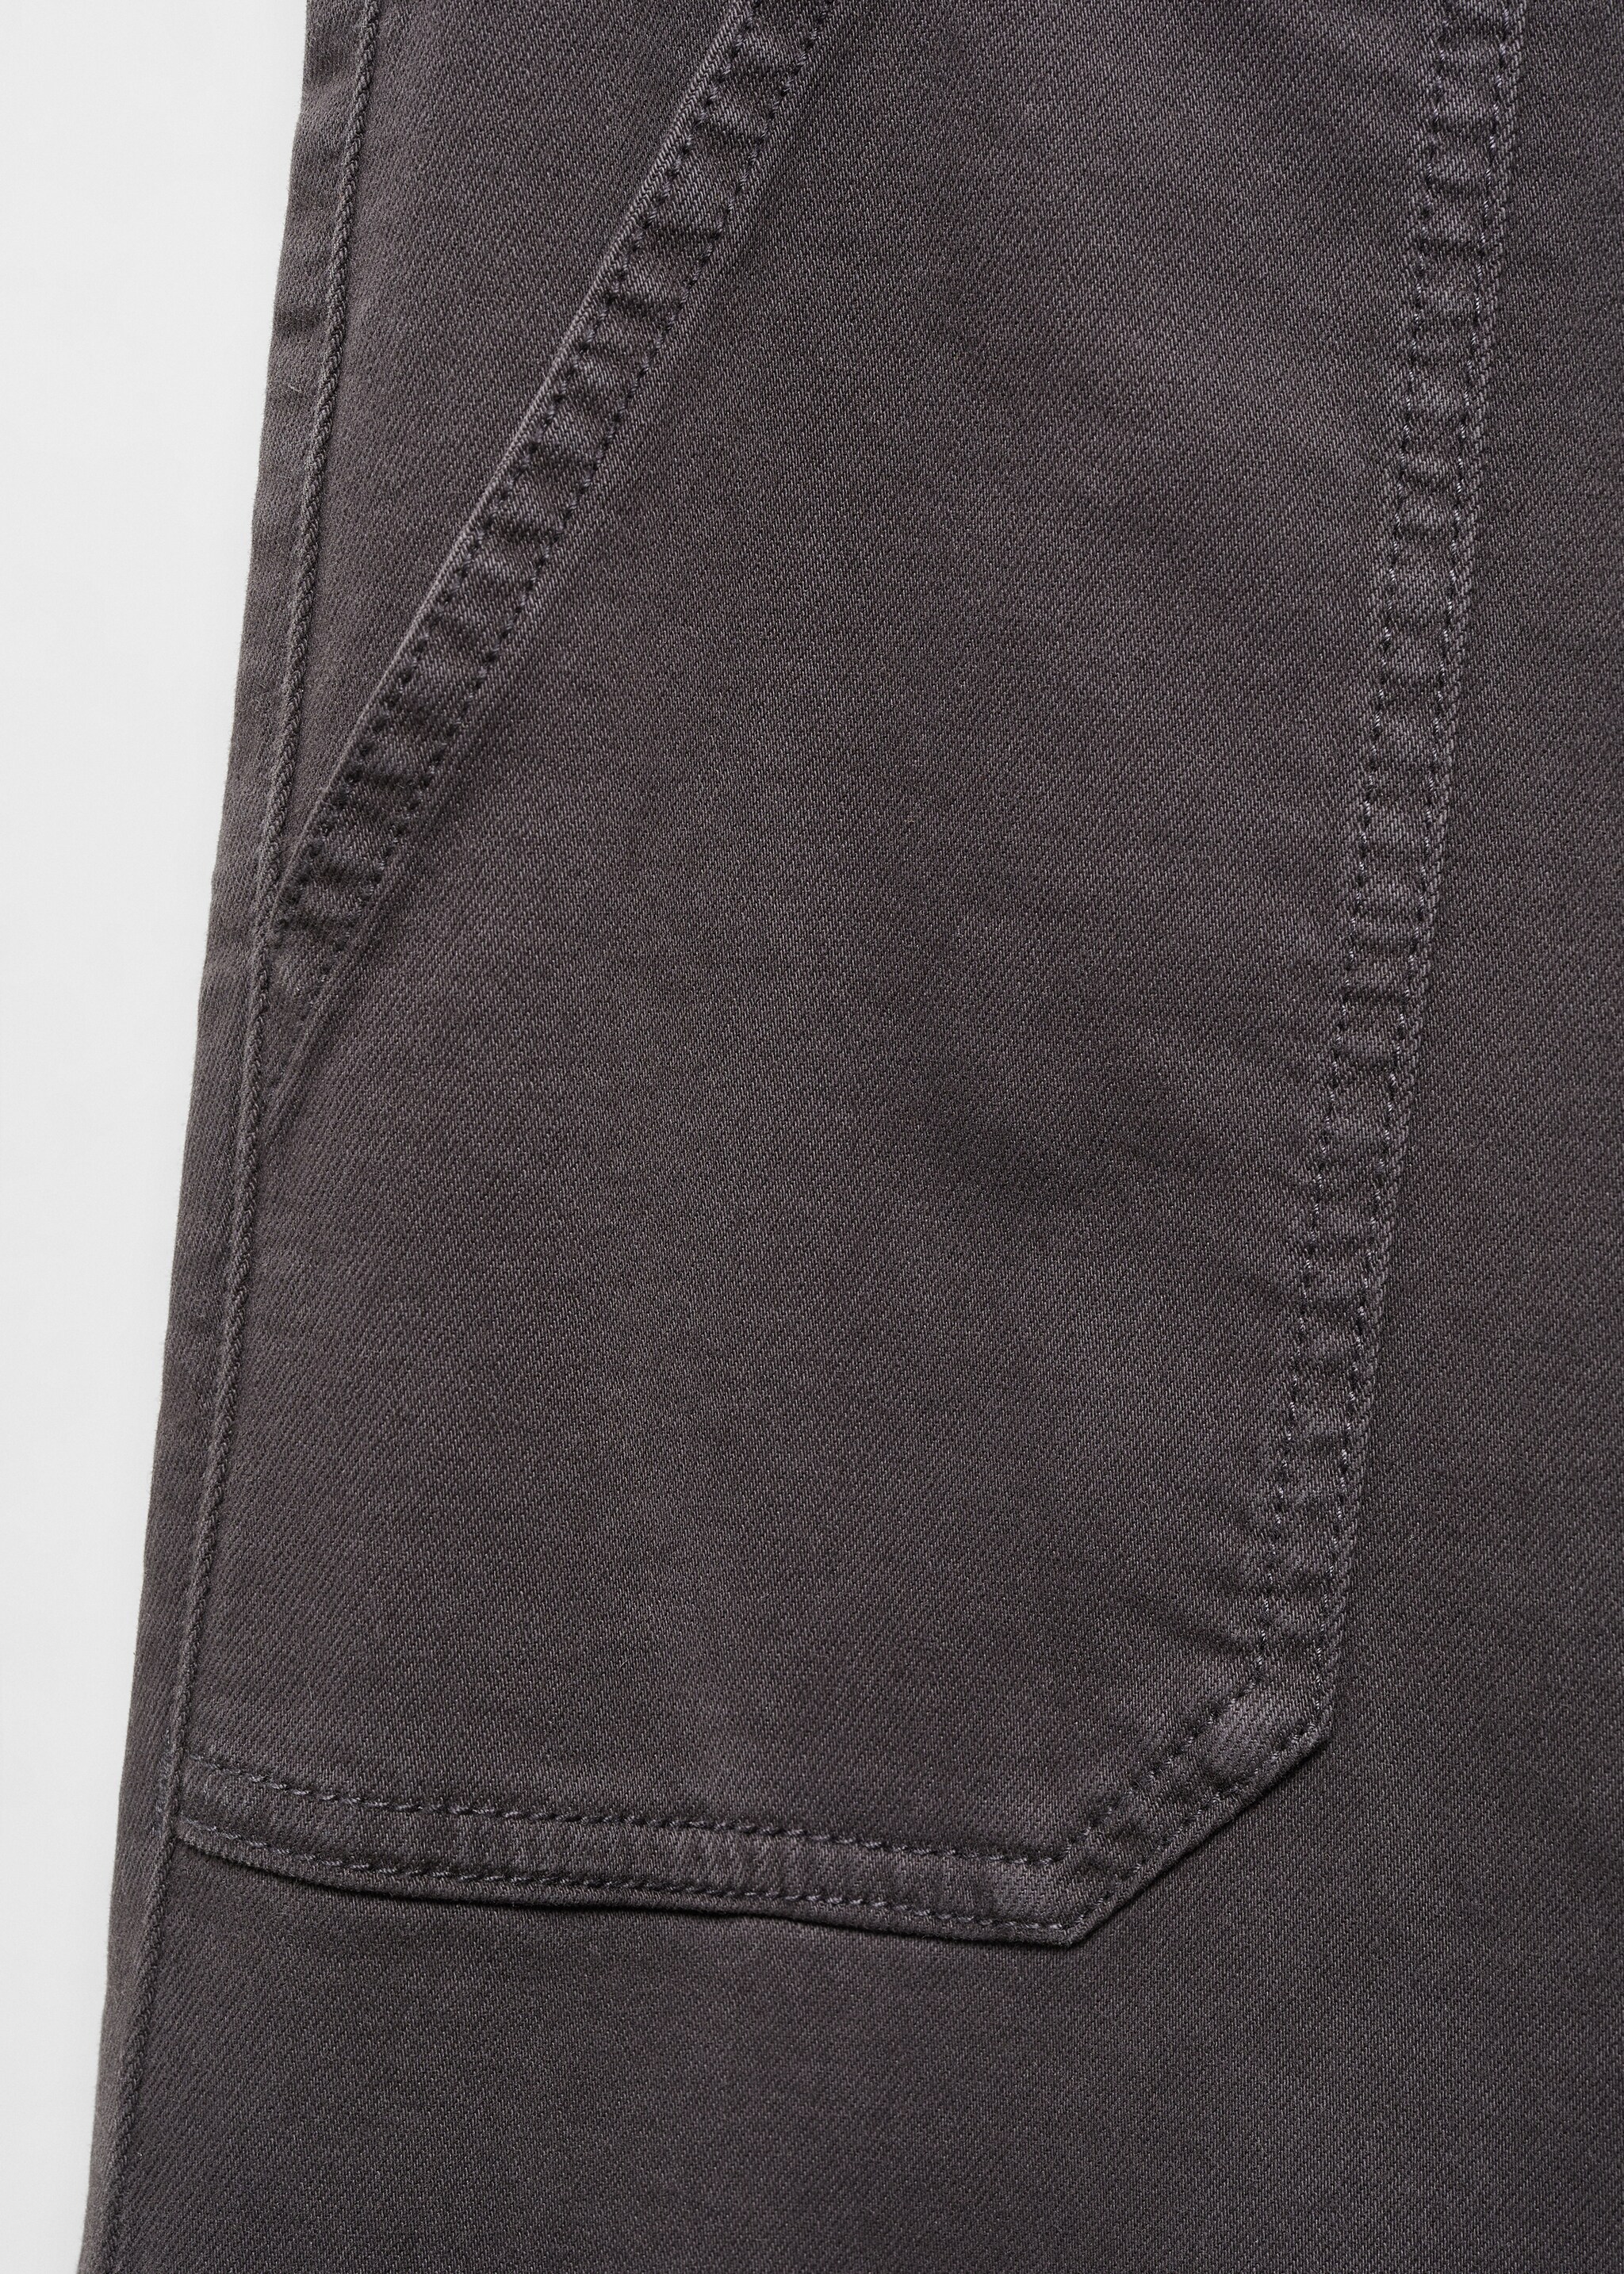 Pantalón culotte bolsillos - Detalle del artículo 8